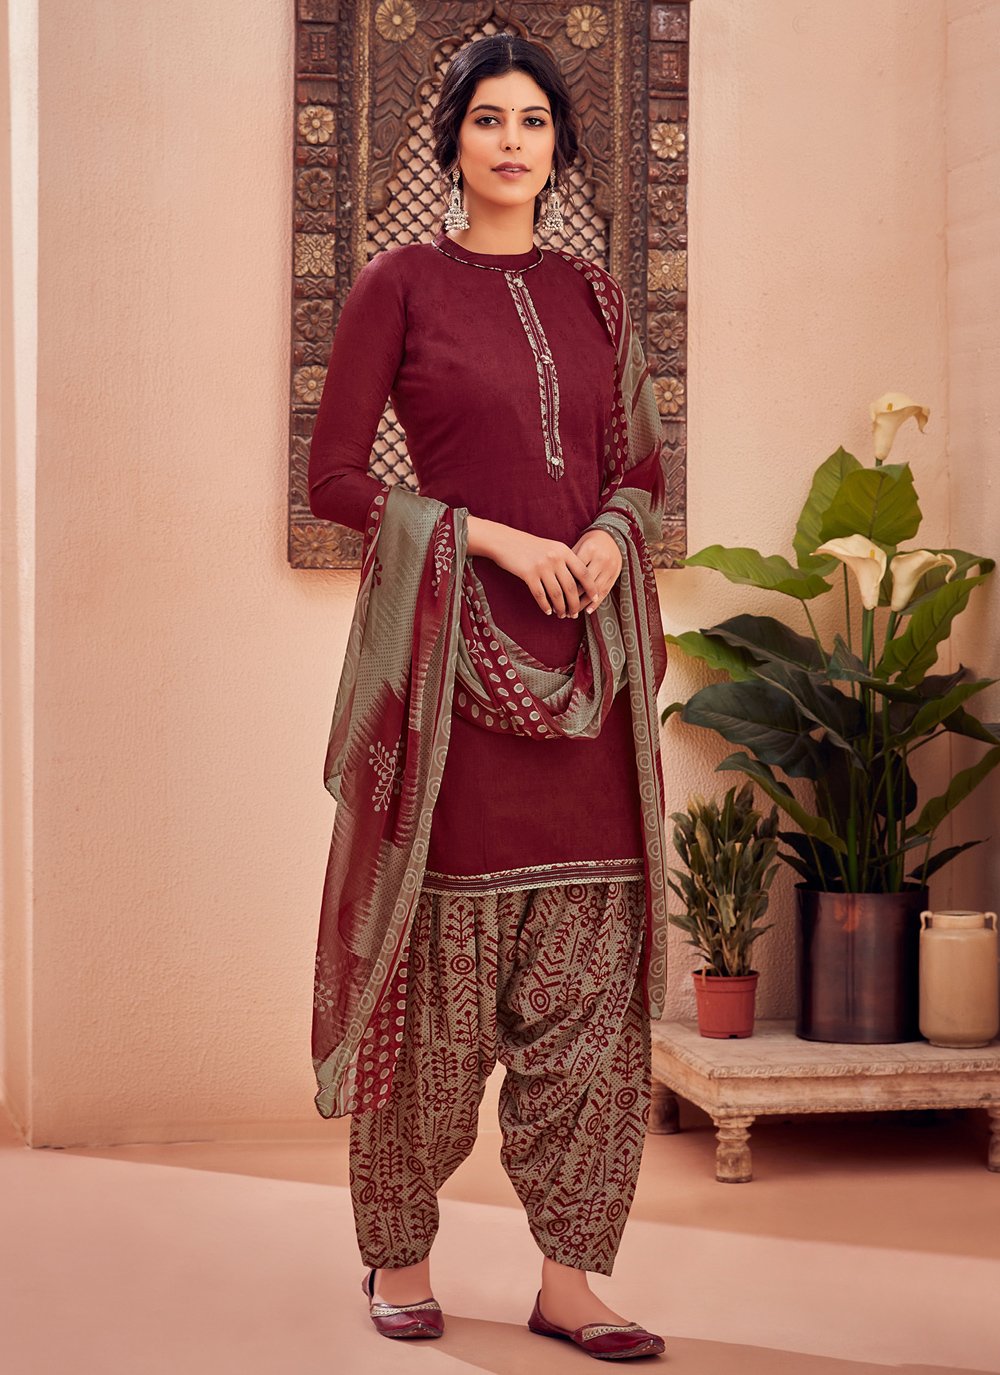 Green Patiala Suit for Woman Punjabi Suit Salwar Kameez Suits - Etsy | Mama  d